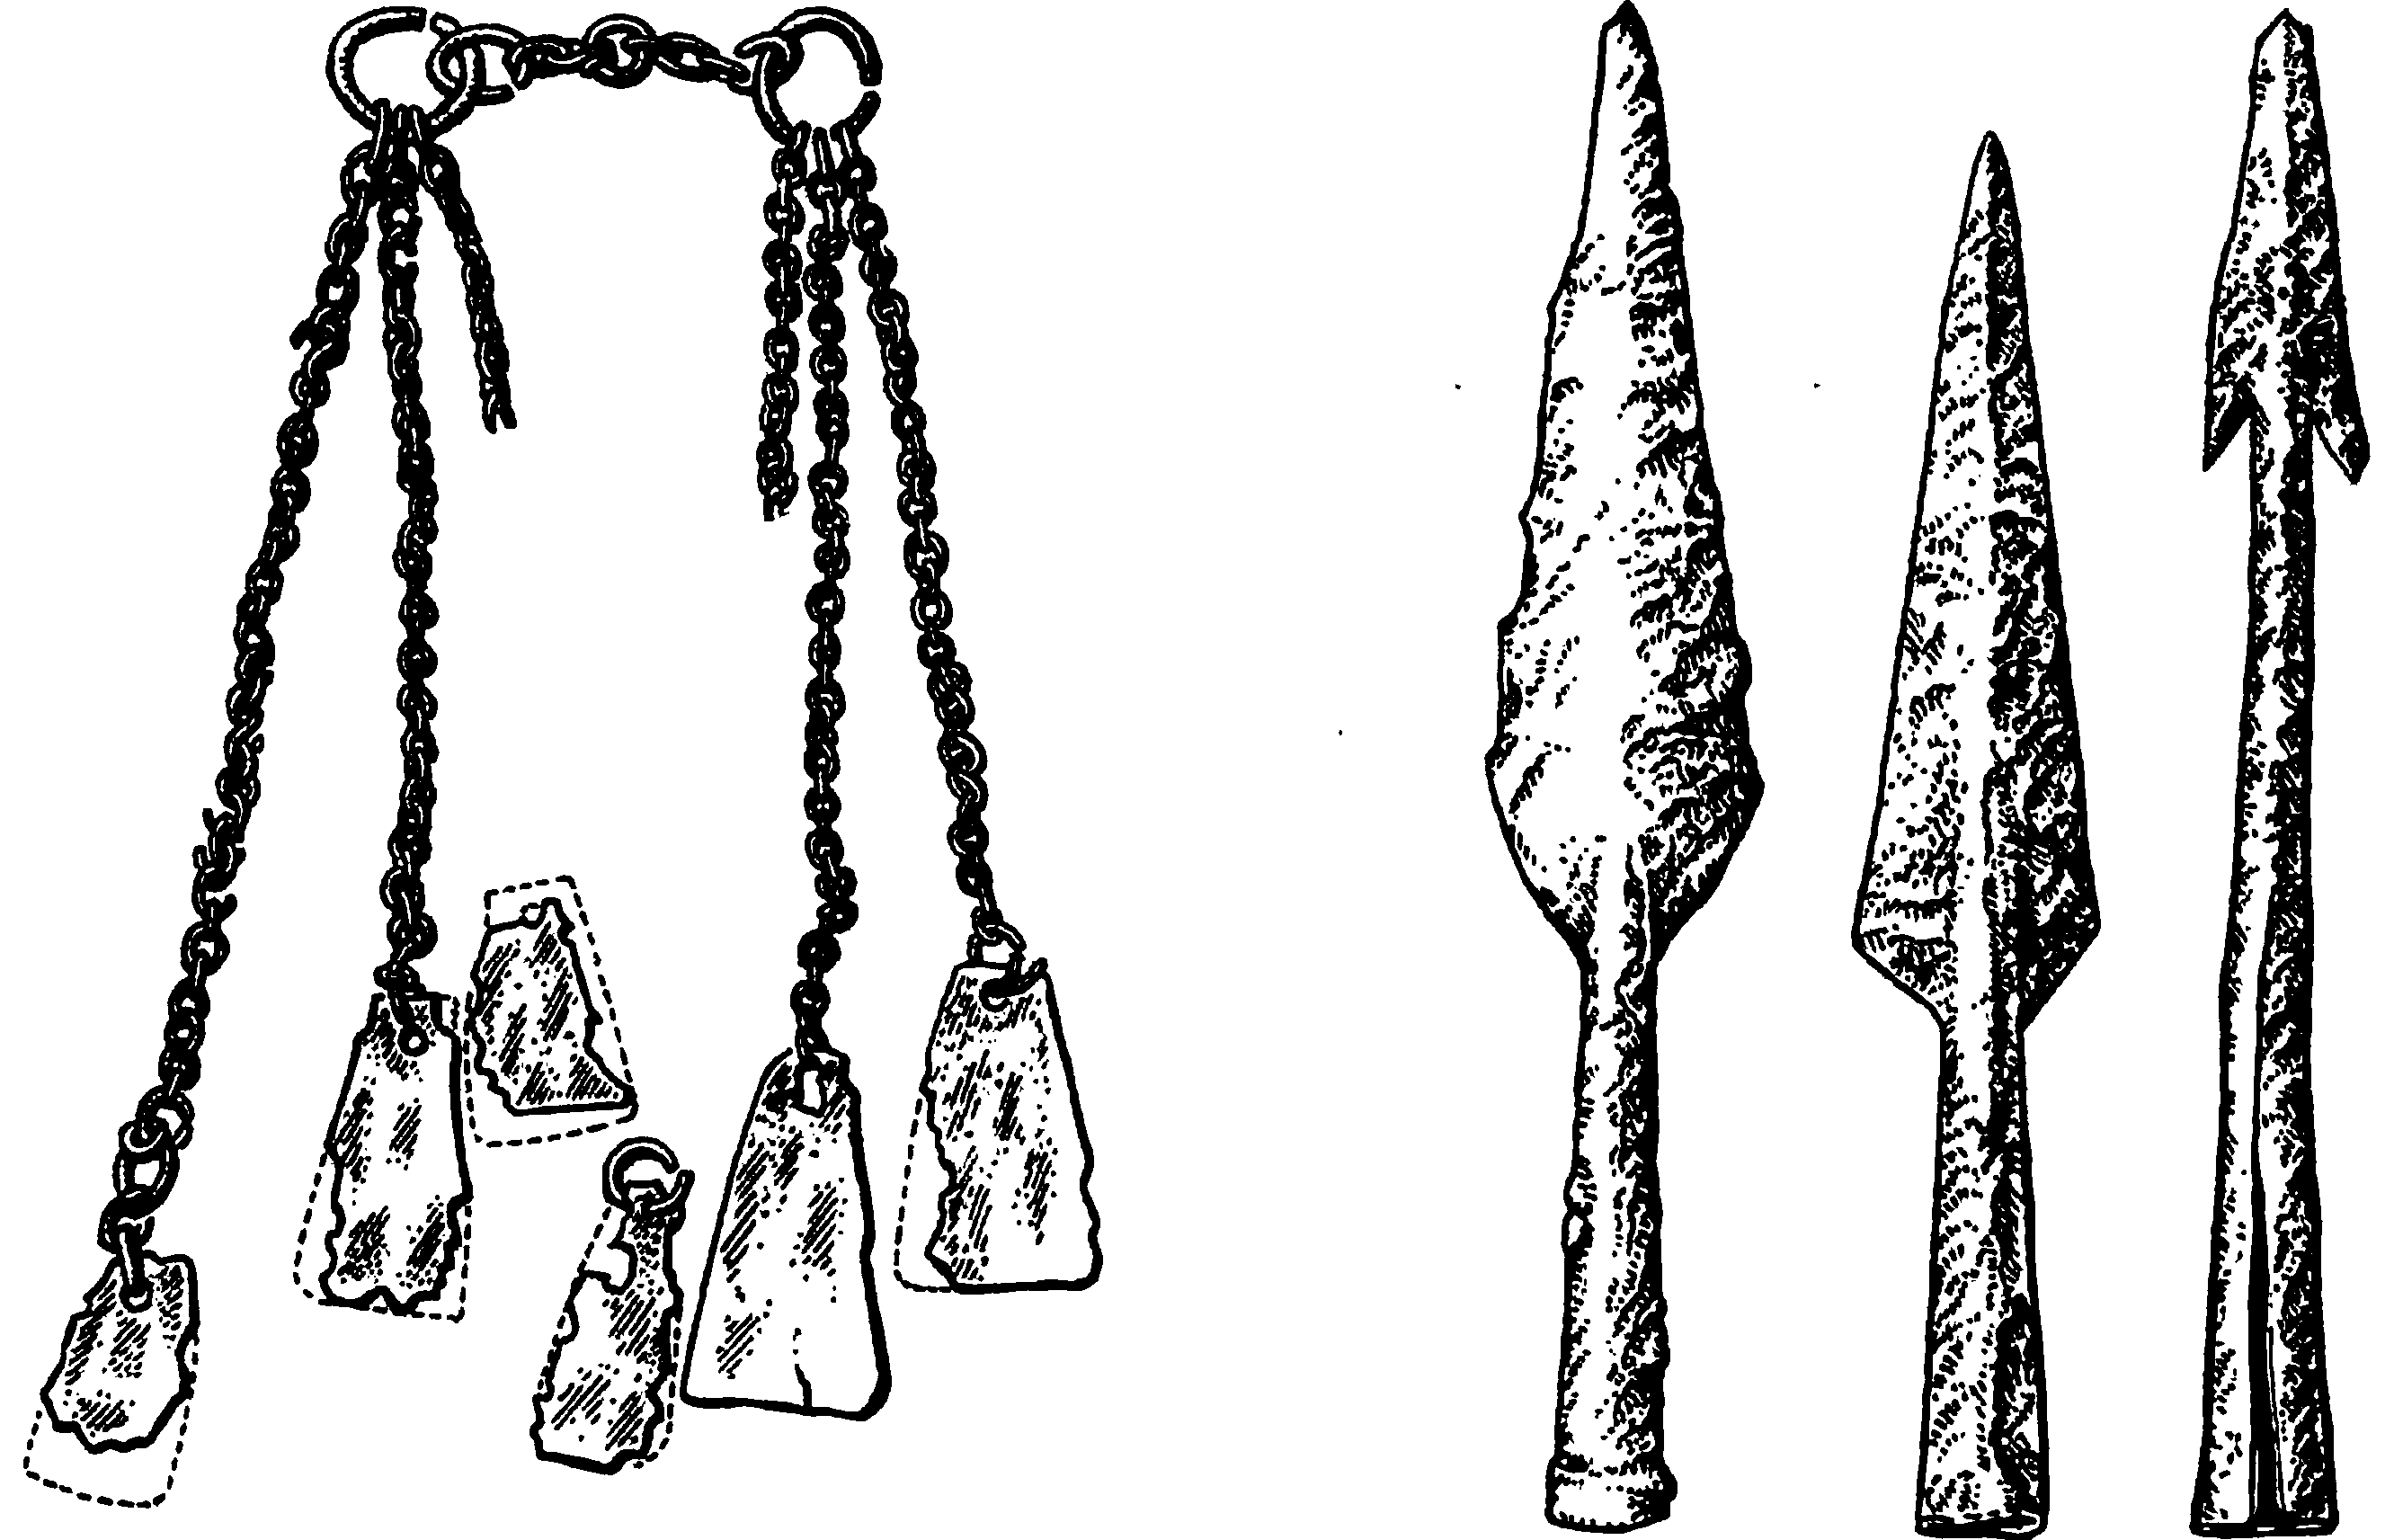 Славянские украшения и оружие зарубинецкой культуры (около рубежа н. э.)